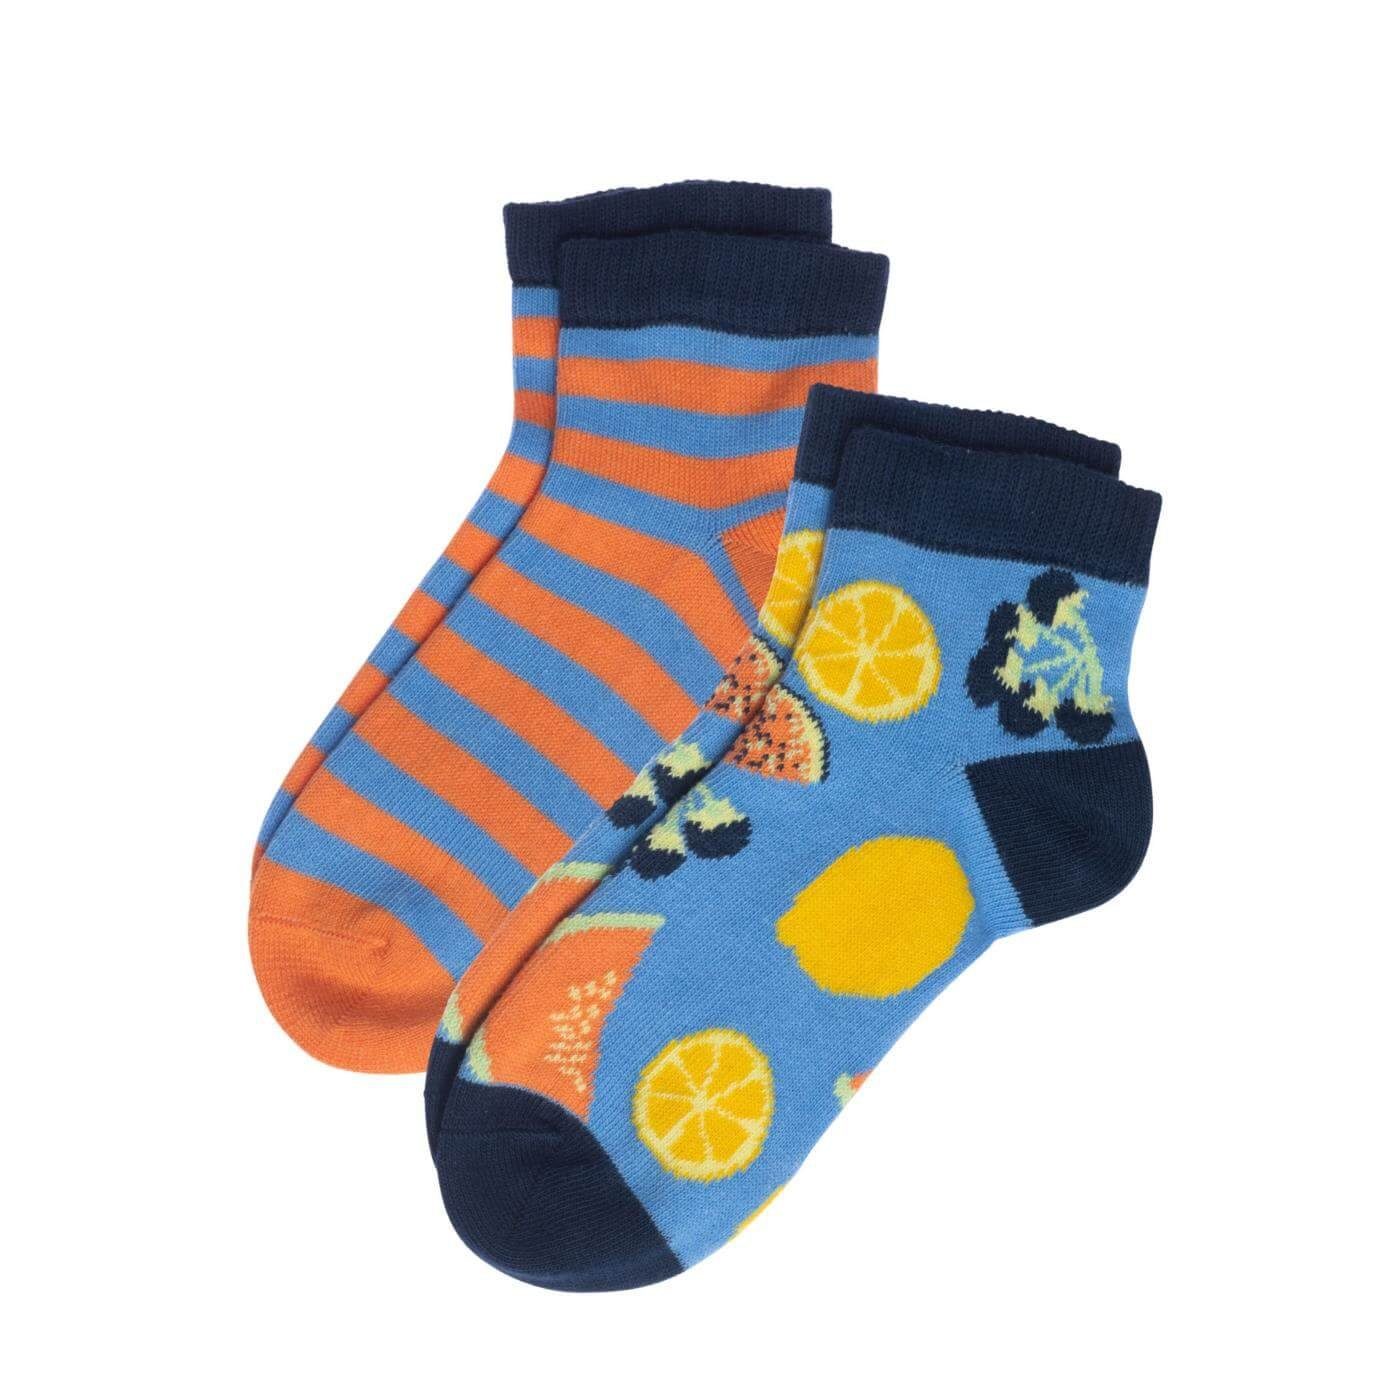 LIVING CRAFTS Socken AGAVE Lustige Sneaker-Socken für Kinder Delicious Fruits